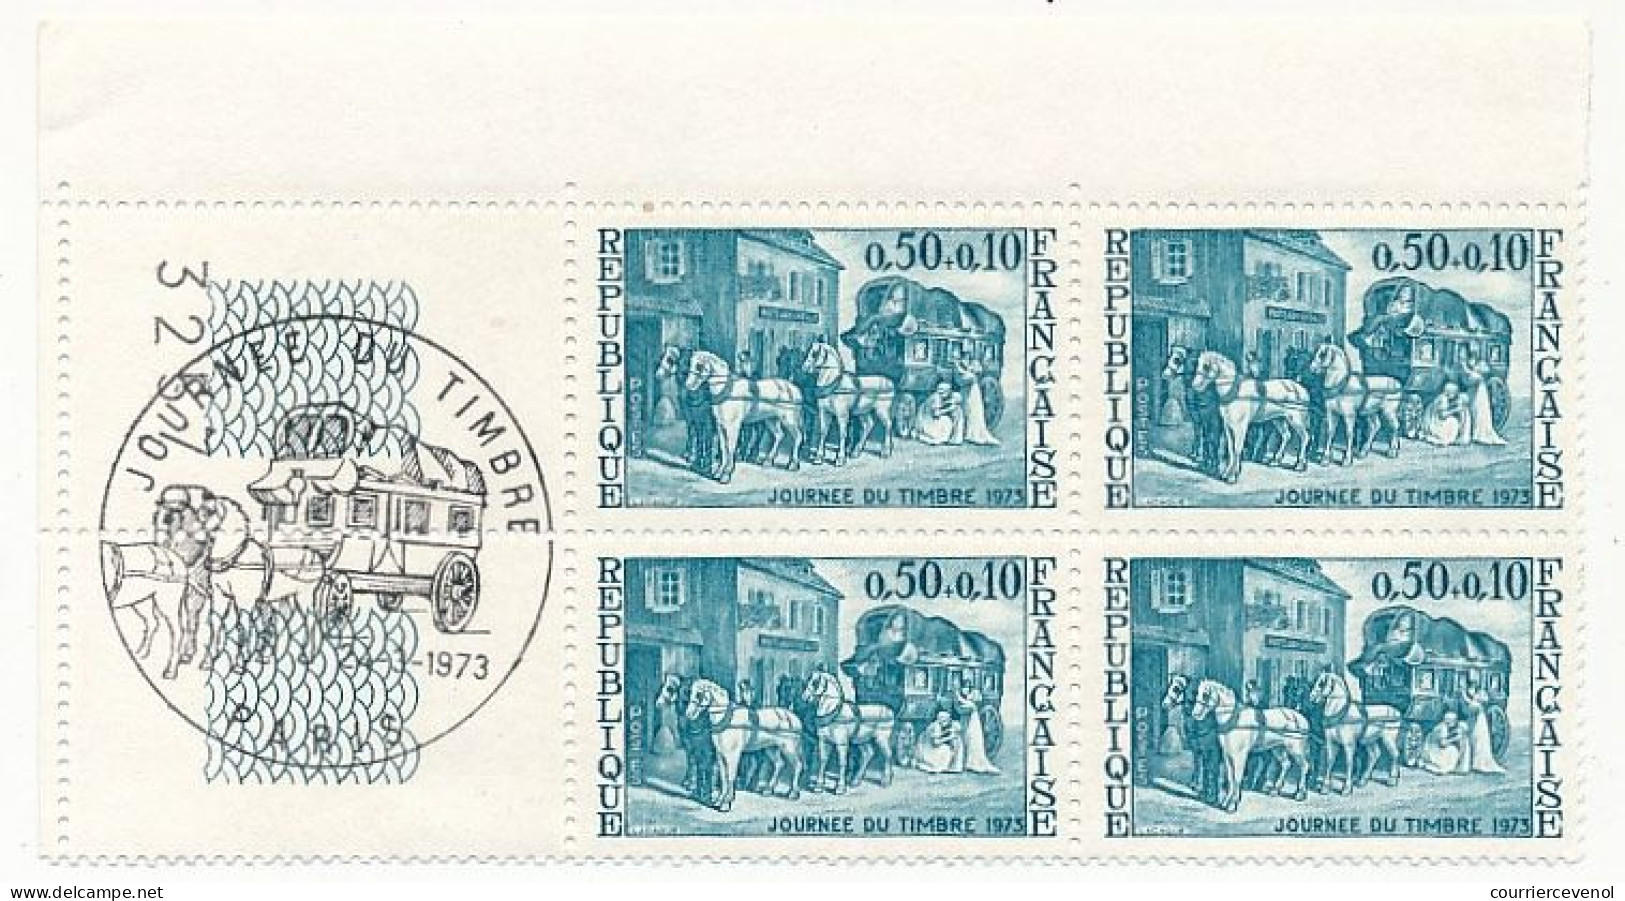 FRANCE - 19 Blocs de quatre avec oblitérations Journée du timbre sur les bords -1965 à 1984 - Paris et Marseille